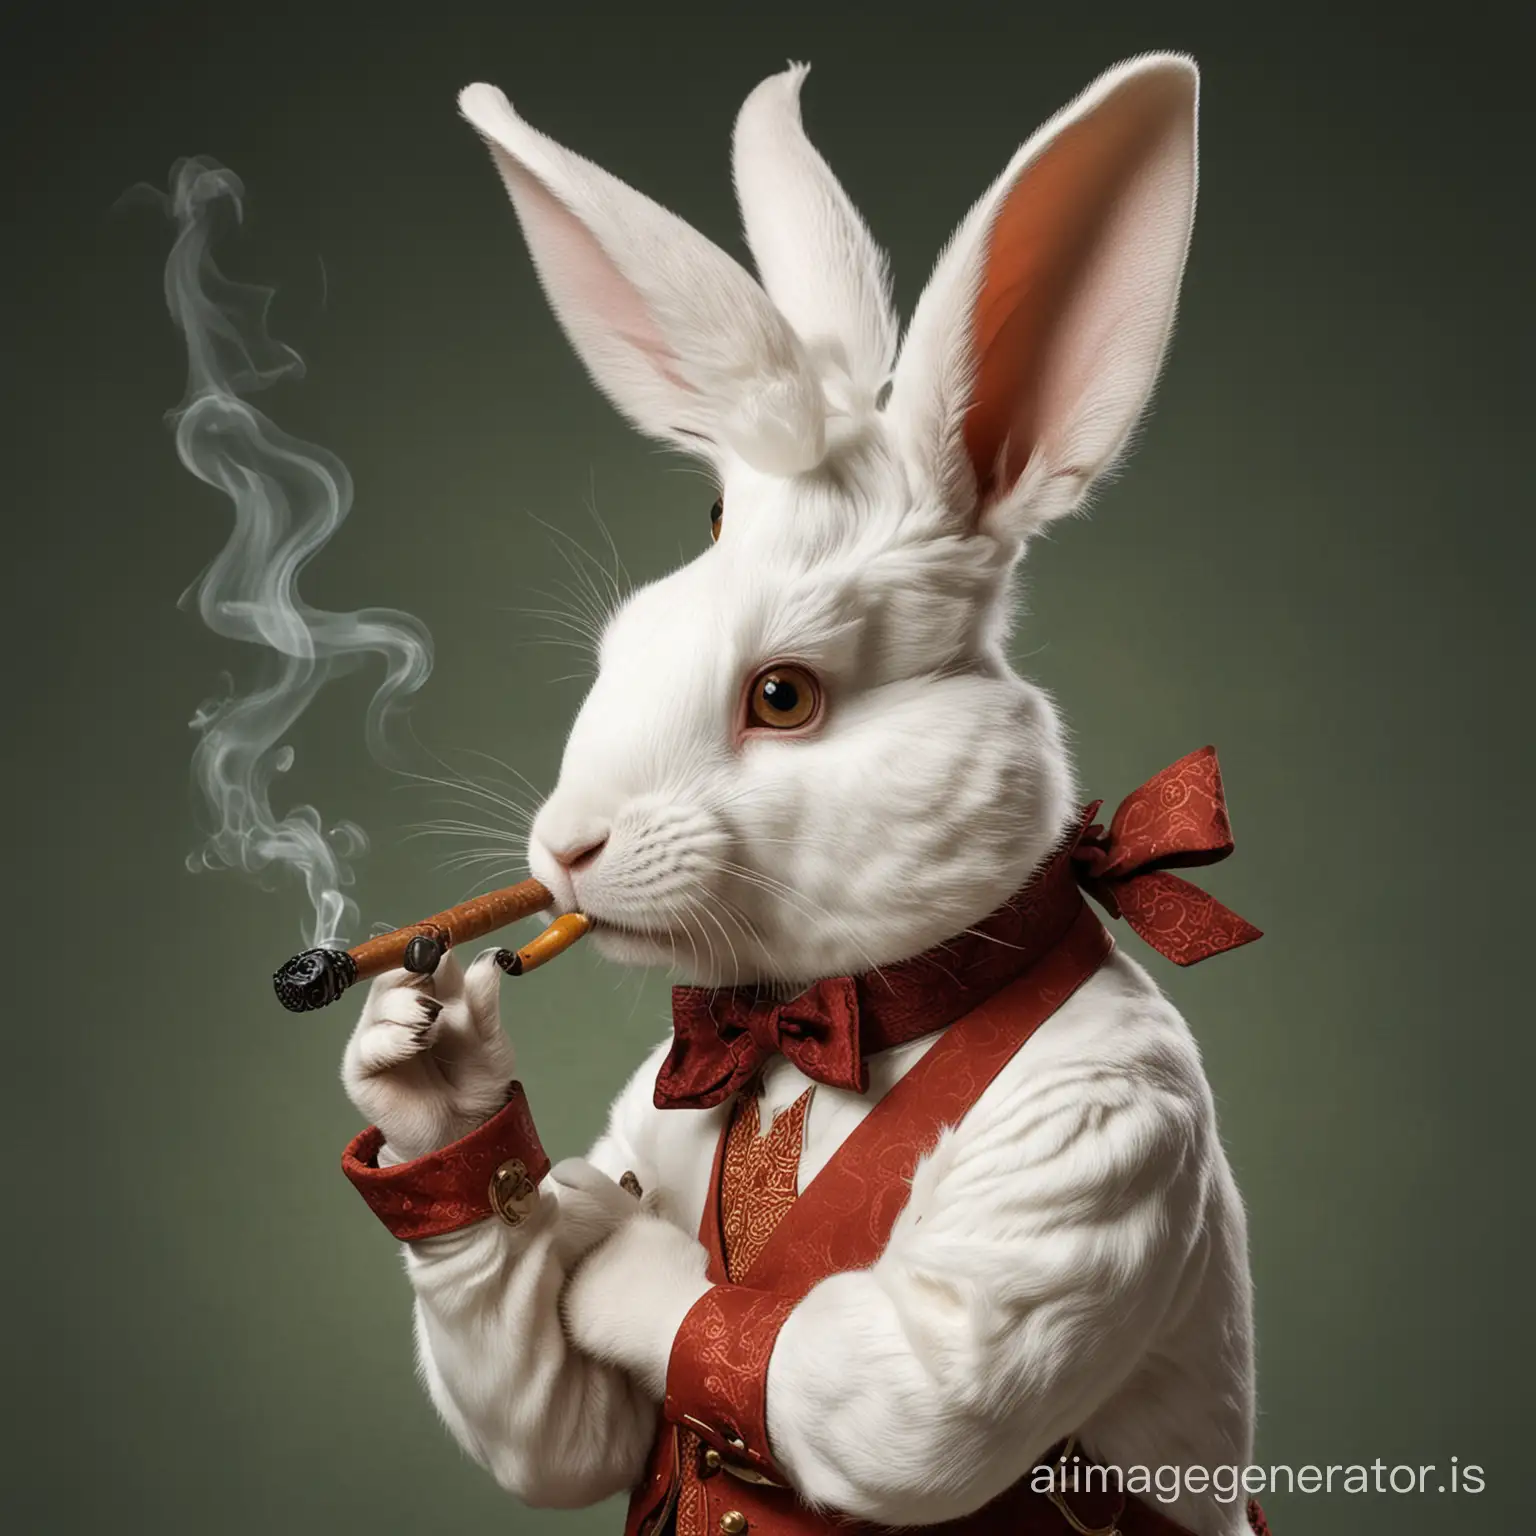 a white rabbit smoking a pipe